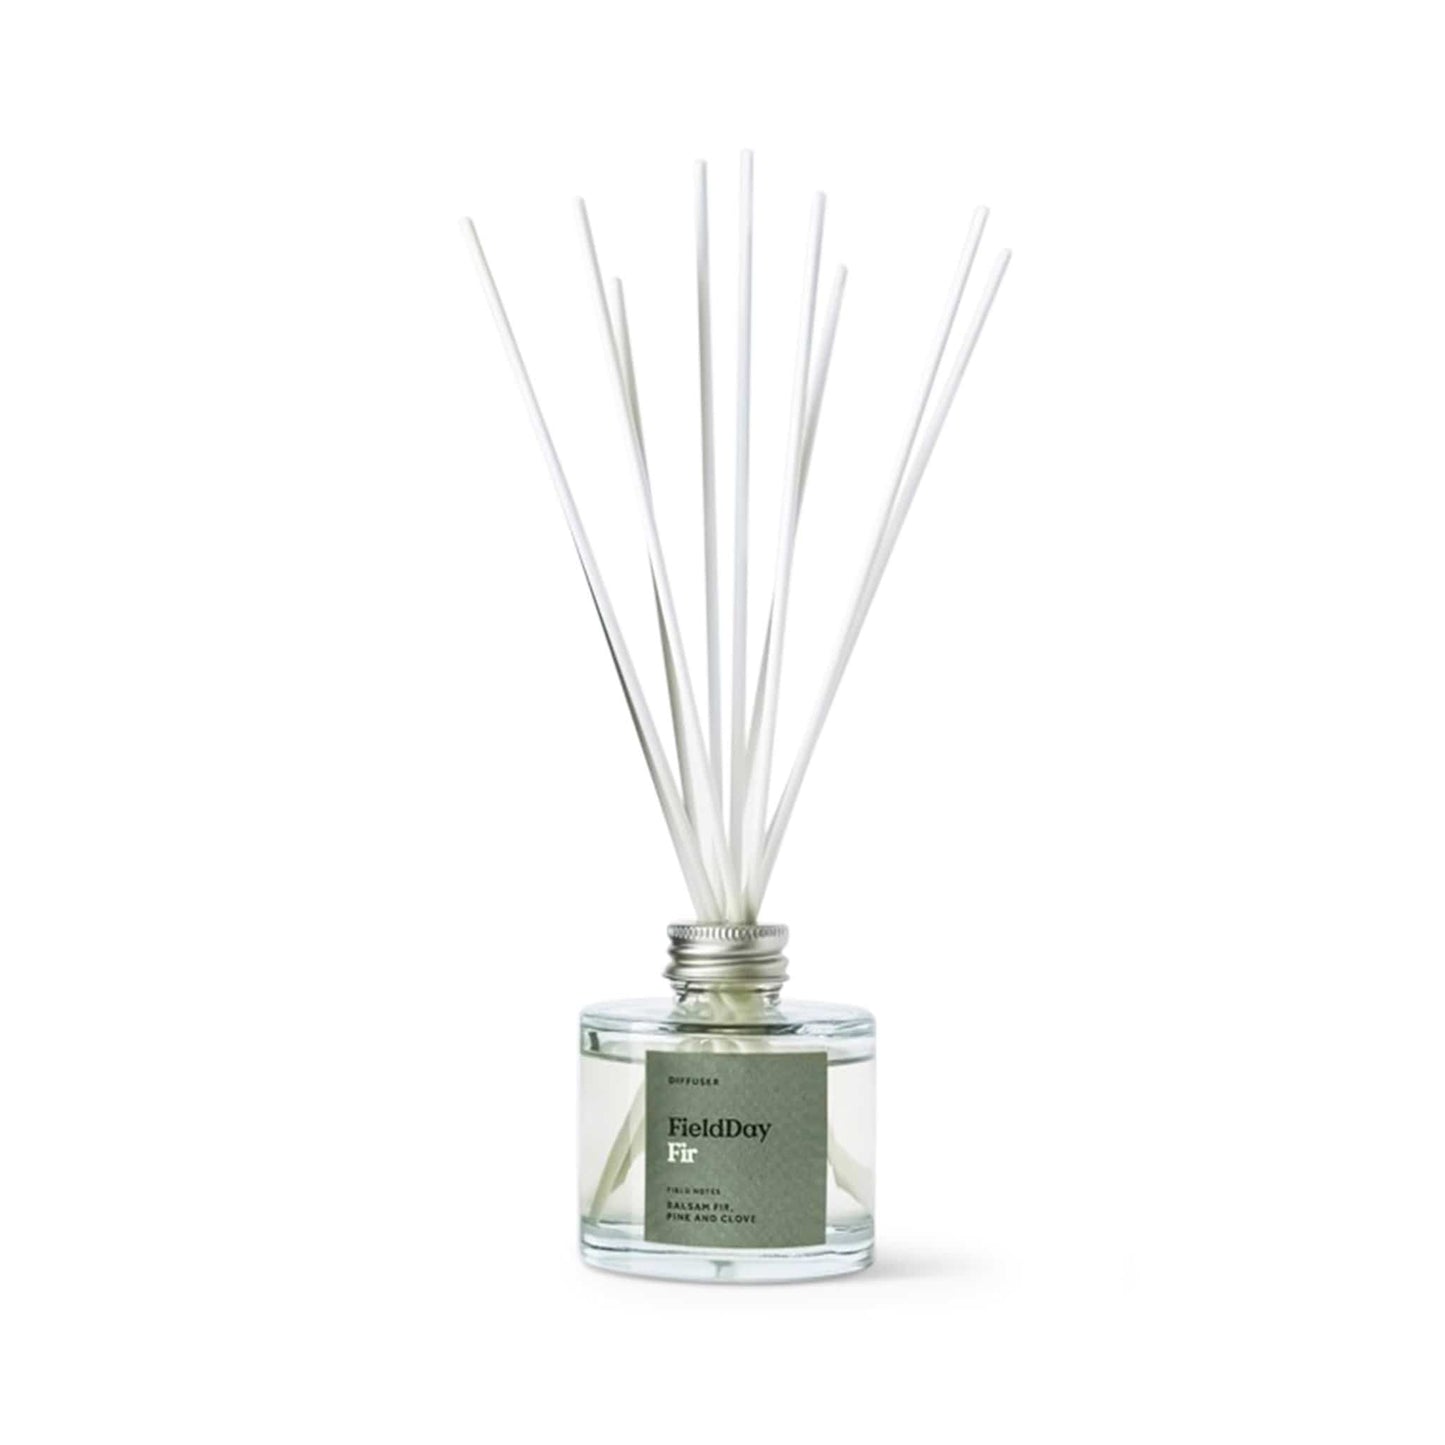 FieldDay Home Fragrance FieldDay Classic Fir Diffuser - Balsam Fir, Pine & Clove - 100ml